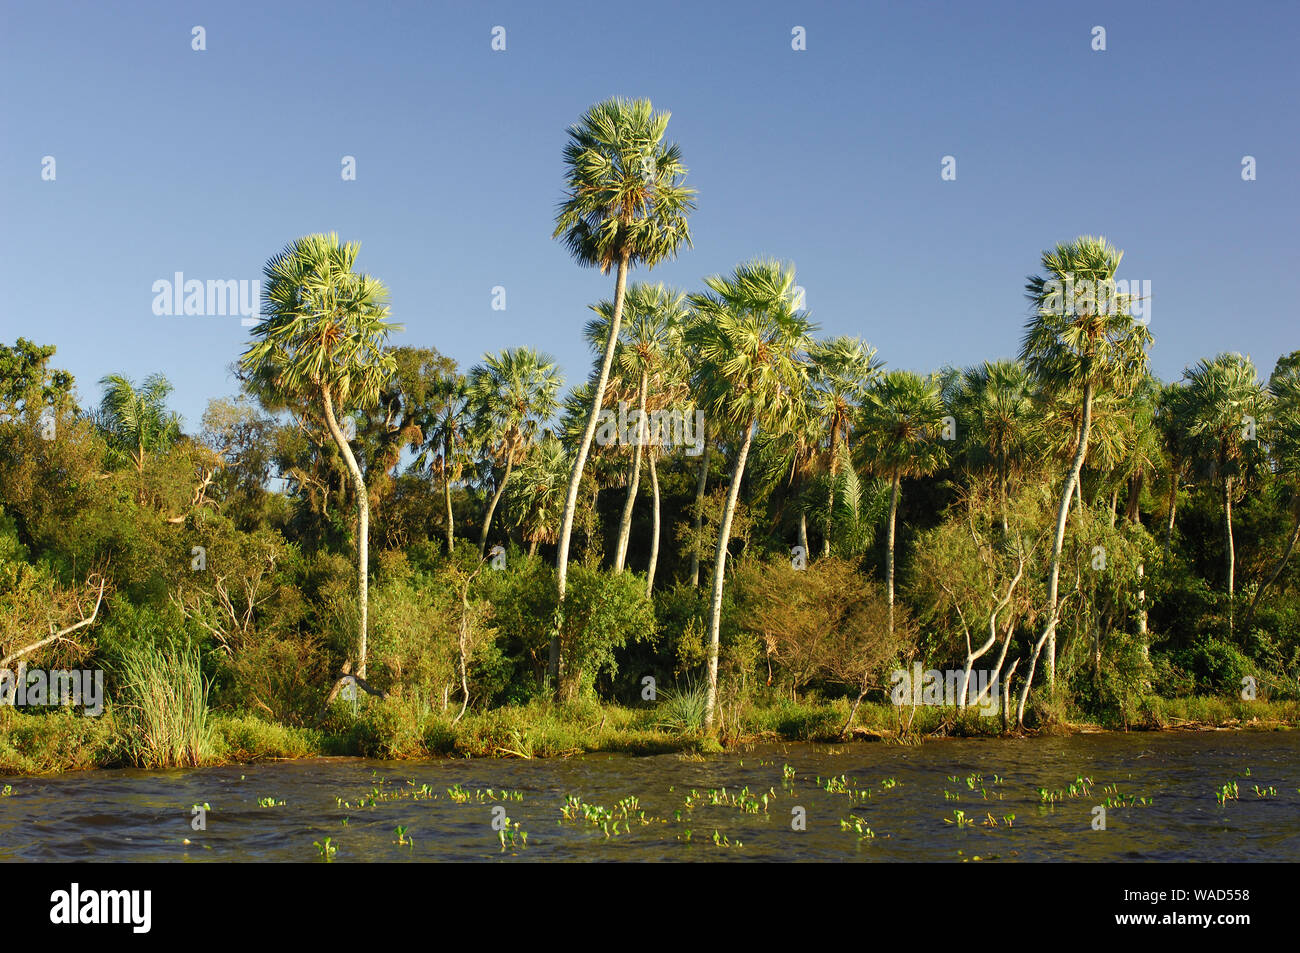 Palm trees at Lago Ibera, Esteros del Ibera, Carlos Pellegrini, Corrientes, Argentina, South America Stock Photo